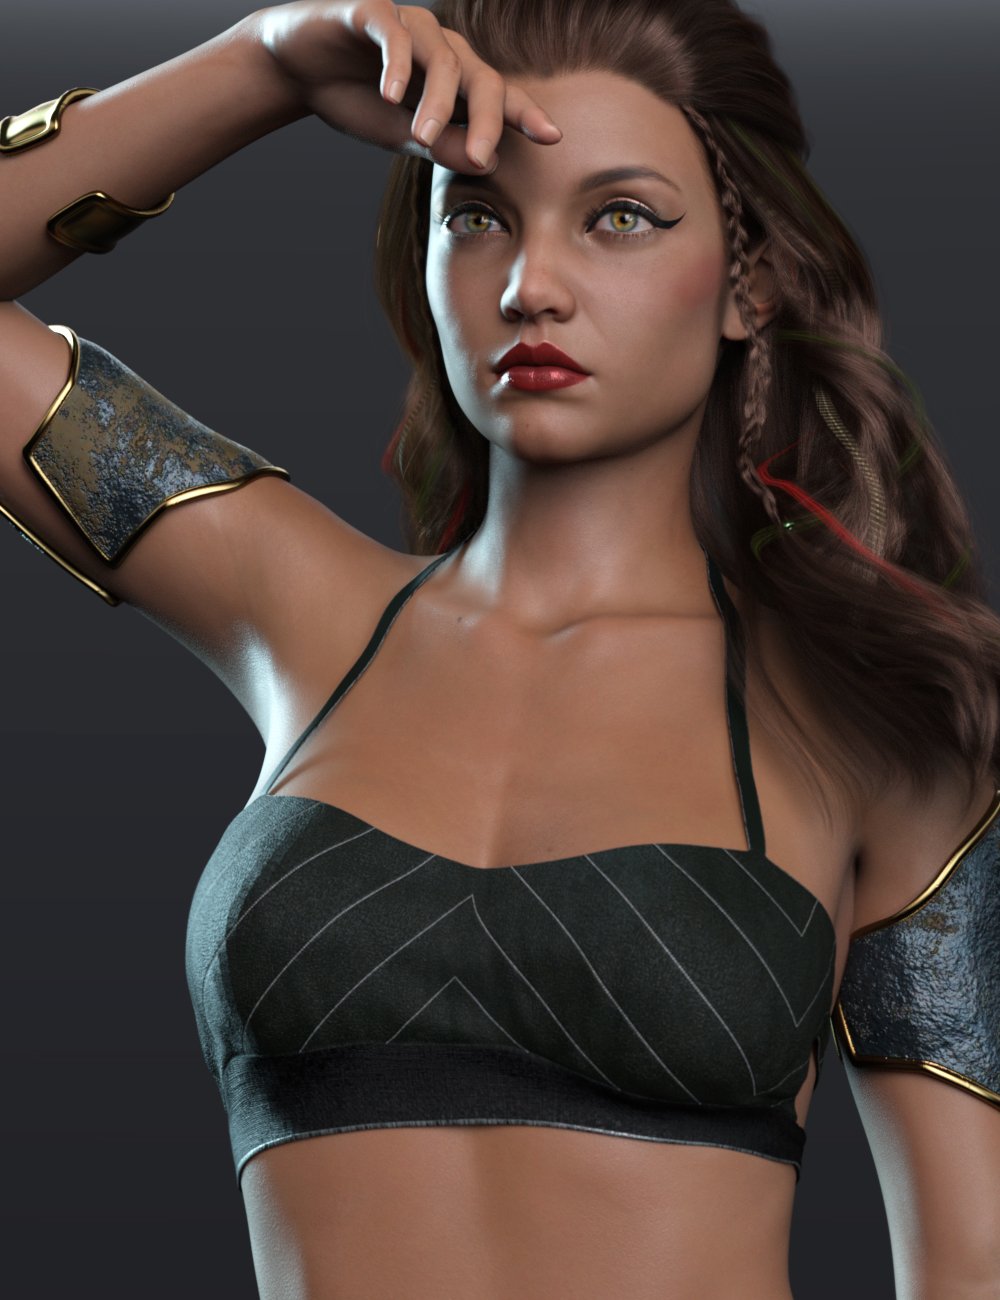 RY Yeanny for Genesis 8.1 Female by: Raiya, 3D Models by Daz 3D